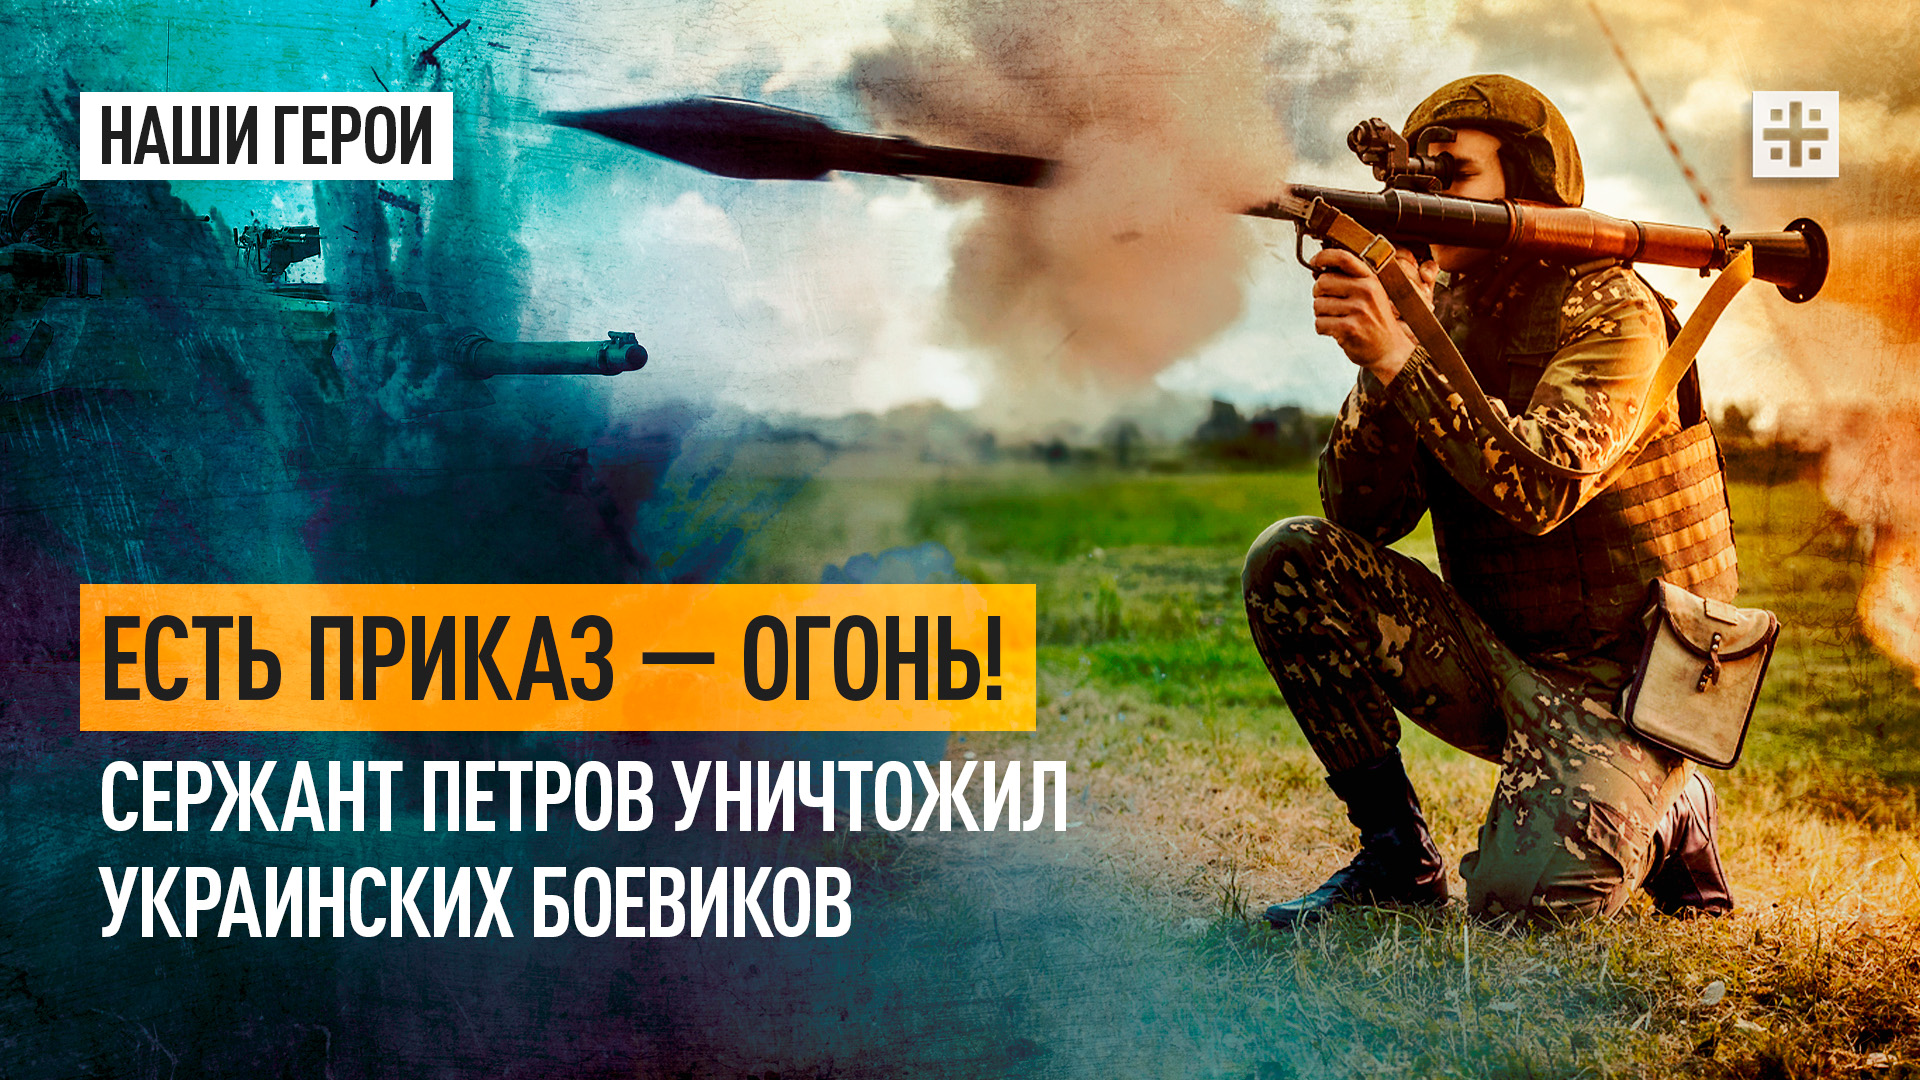 Есть приказ — огонь! Сержант Петров уничтожил украинских боевиков